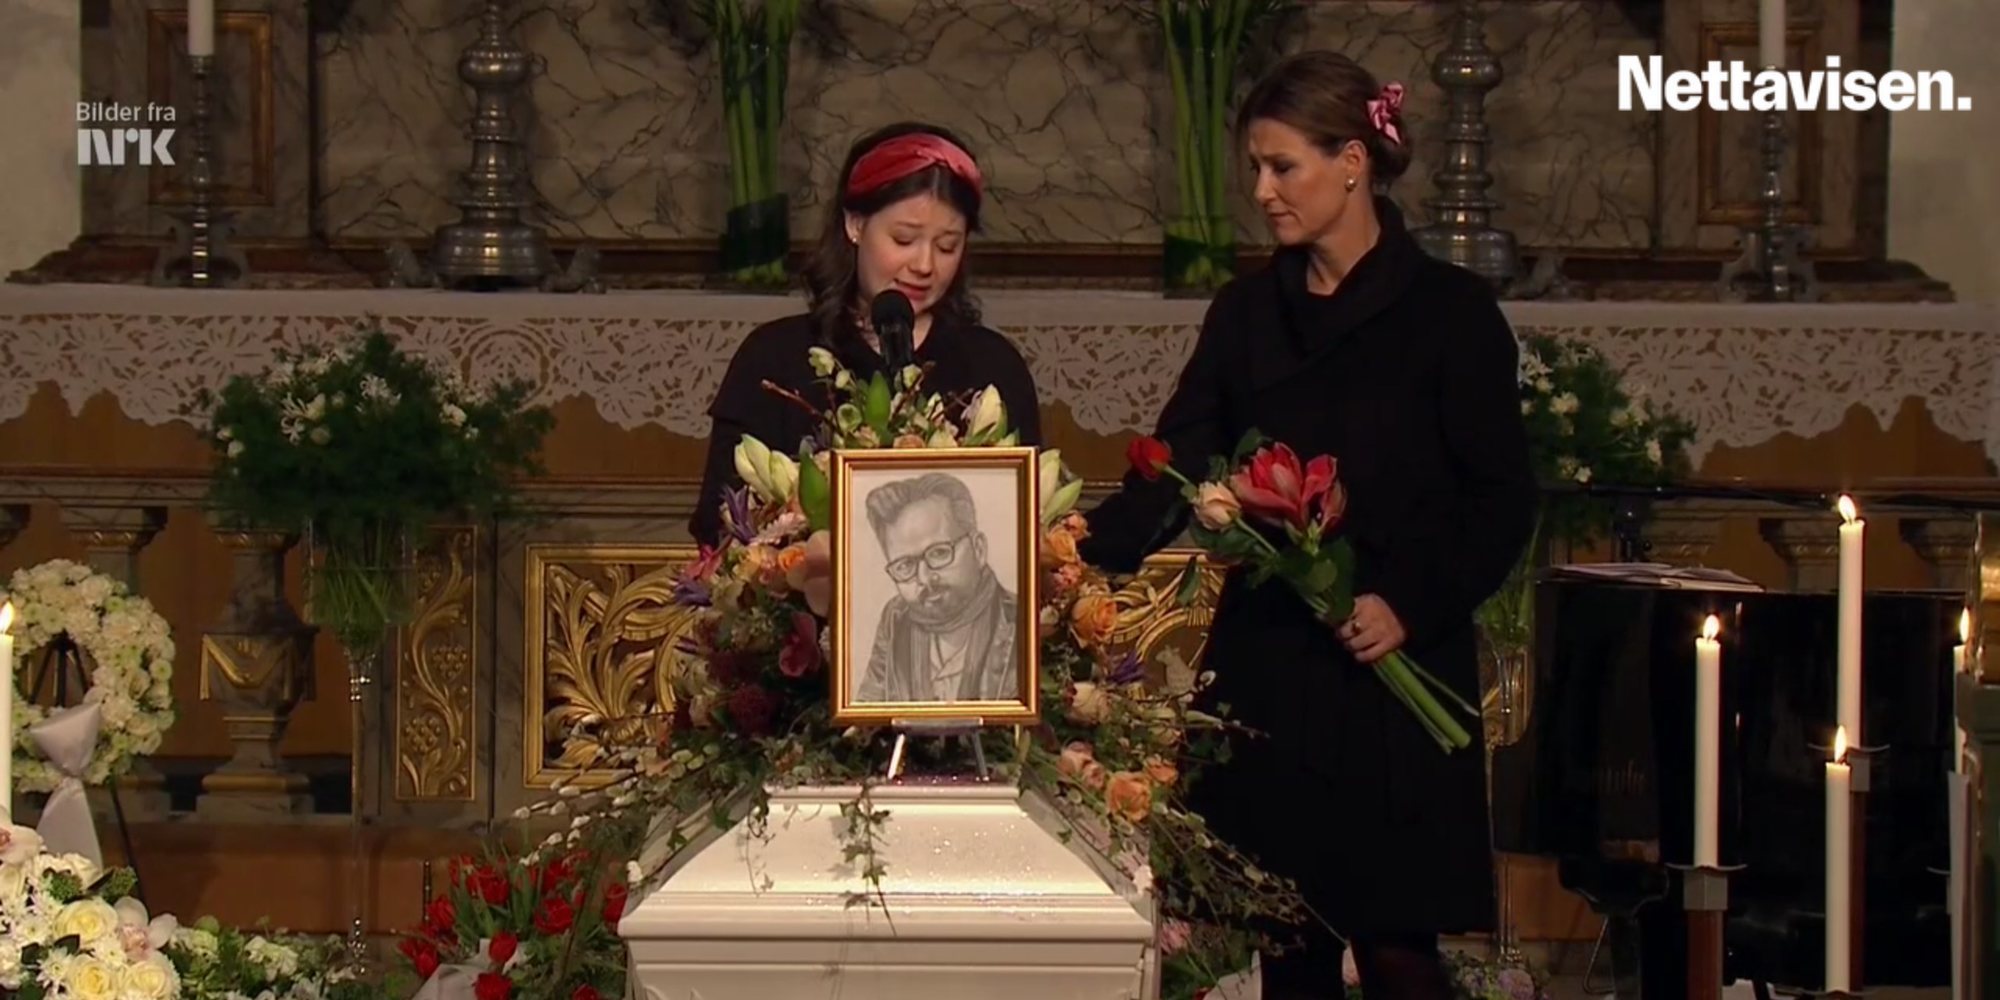 Las emotivas palabras de Maud Behn en el funeral de Ari Behn con un mensaje sobre la importancia de la salud mental